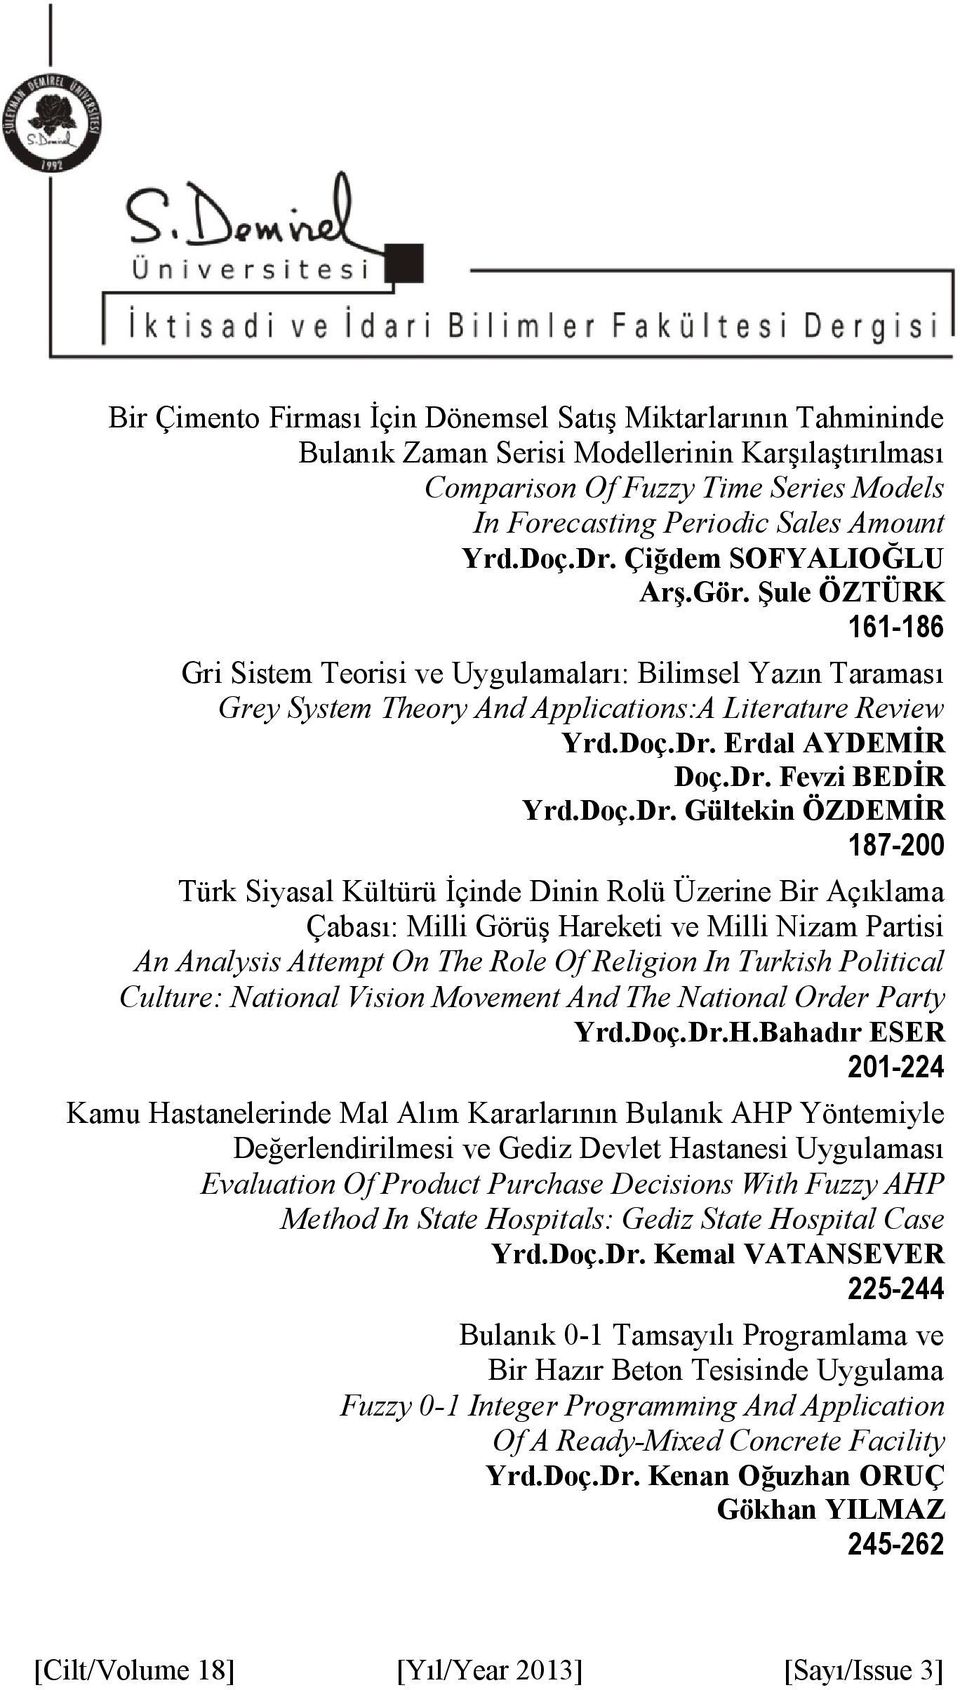 Dr. Fevzi BEDİR Yrd.Doç.Dr. Gültekin ÖZDEMİR 187-200 Türk Siyasal Kültürü İçinde Dinin Rolü Üzerine Bir Açıklama Çabası: Milli Görüş Hareketi ve Milli Nizam Partisi An Analysis Attempt On The Role Of